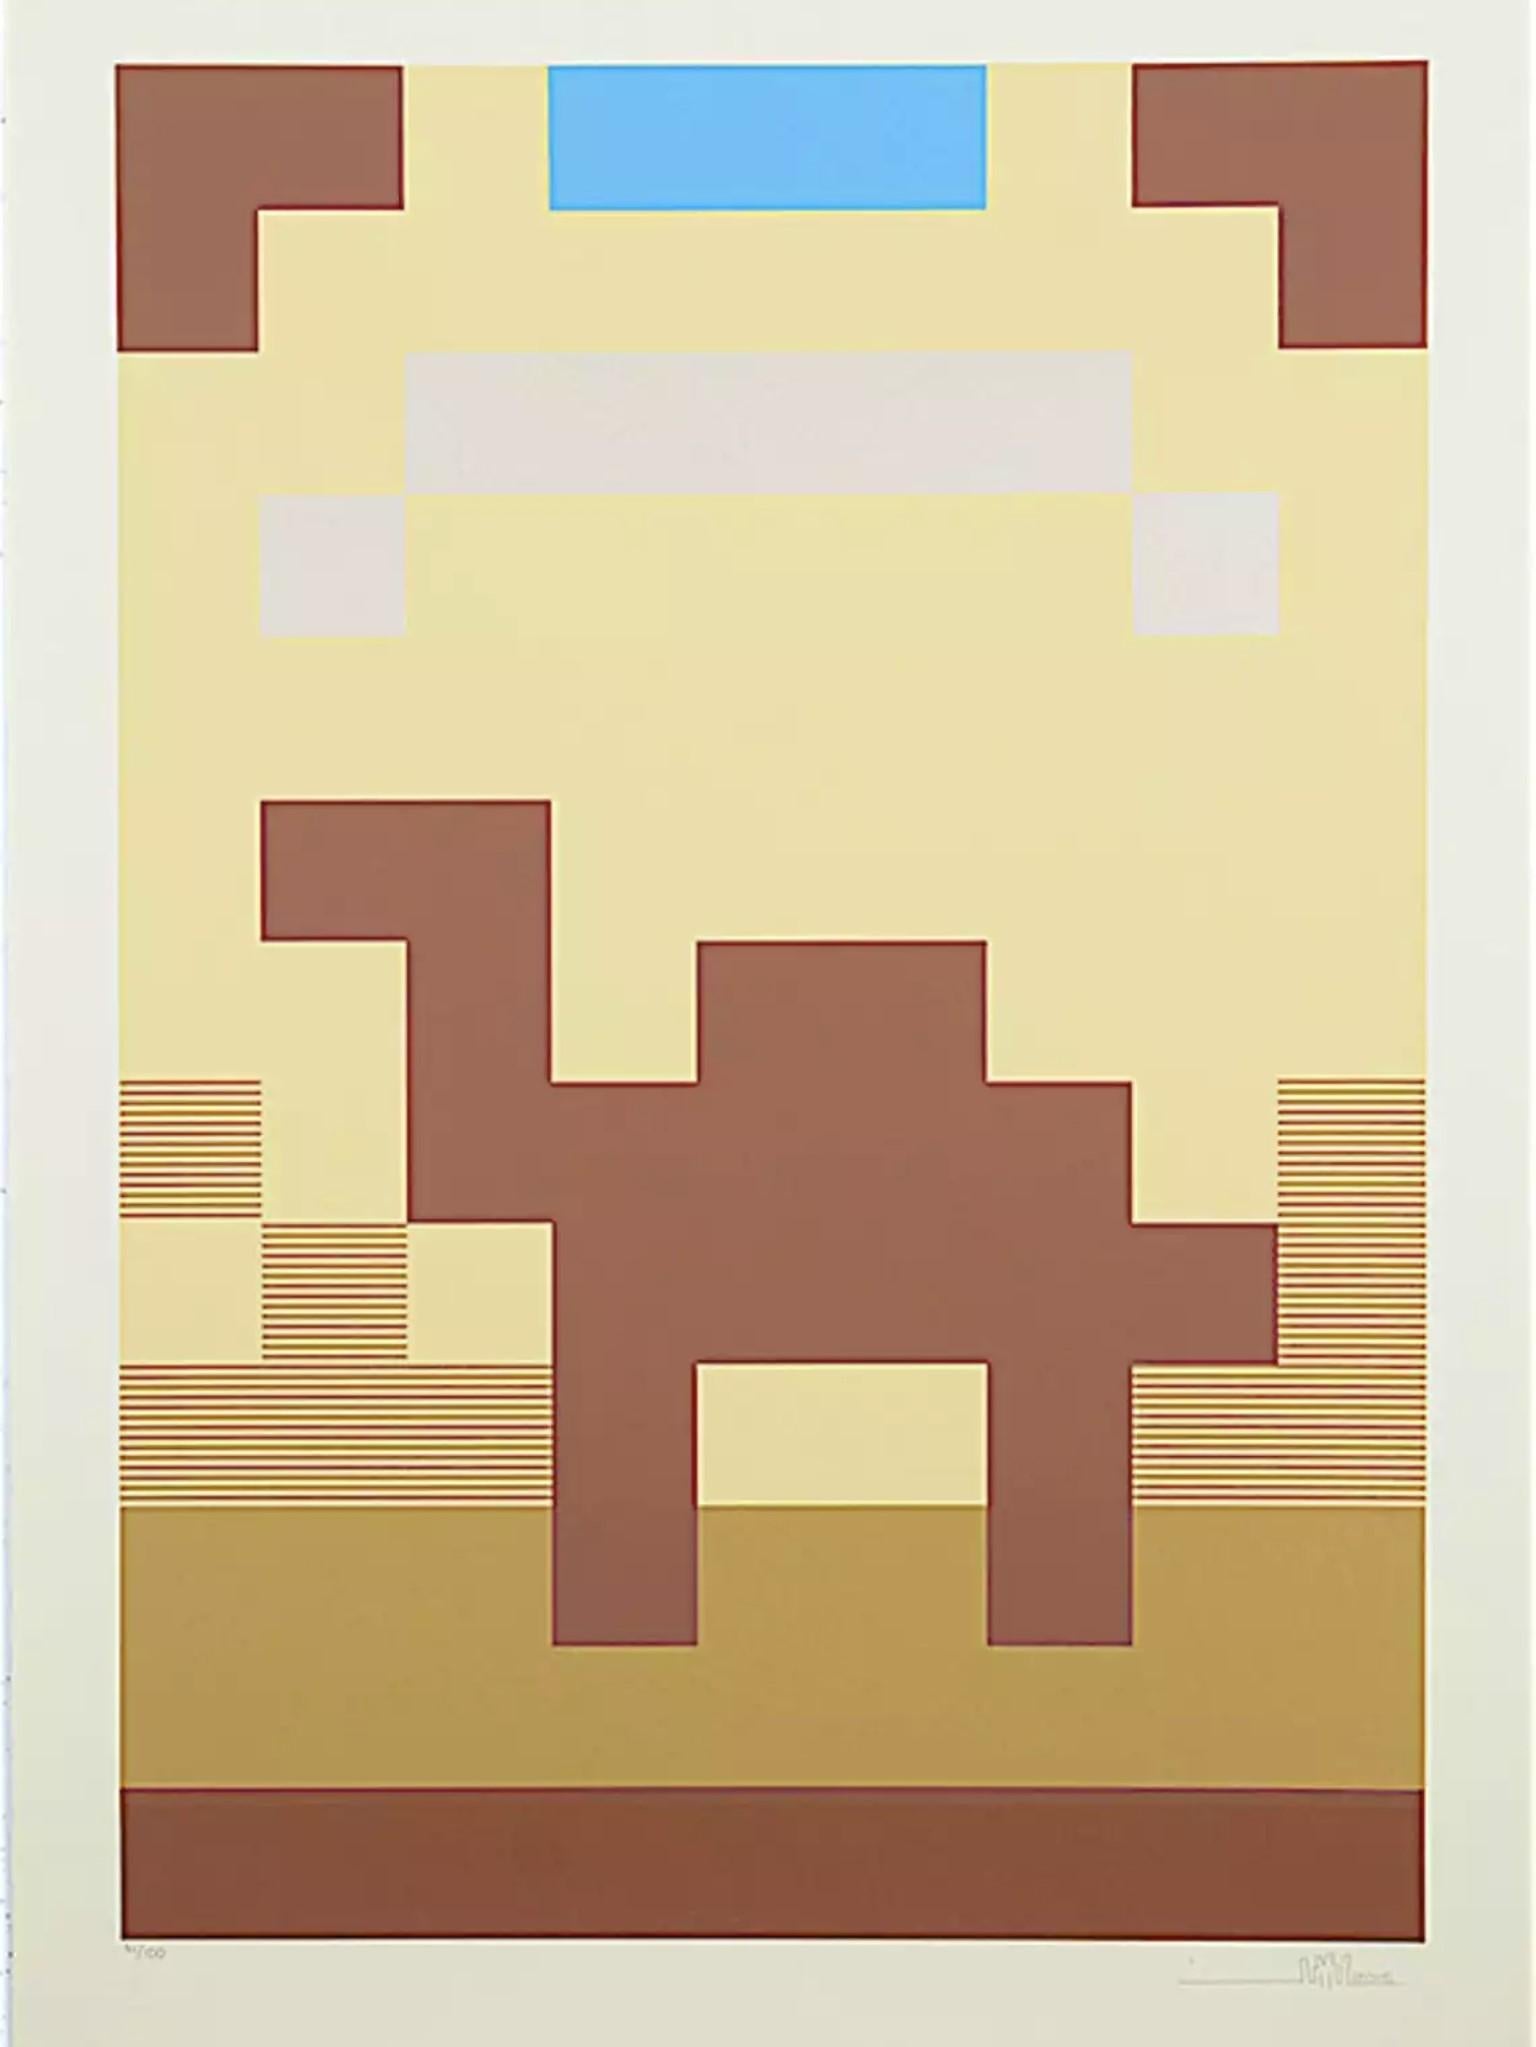 Der "Camel Print" stellt ein friedliches Bild eines Tieres in der Wüste dar.
Größe: 		34 x 24 Zoll
MATERIAL:	Coventry Rag 320gsm Papier
Medium:	6-Farben-Siebdruck
Ausgabe von:	100
Unterschrift:	Signiert und nummeriert (74/100), vom Künstler